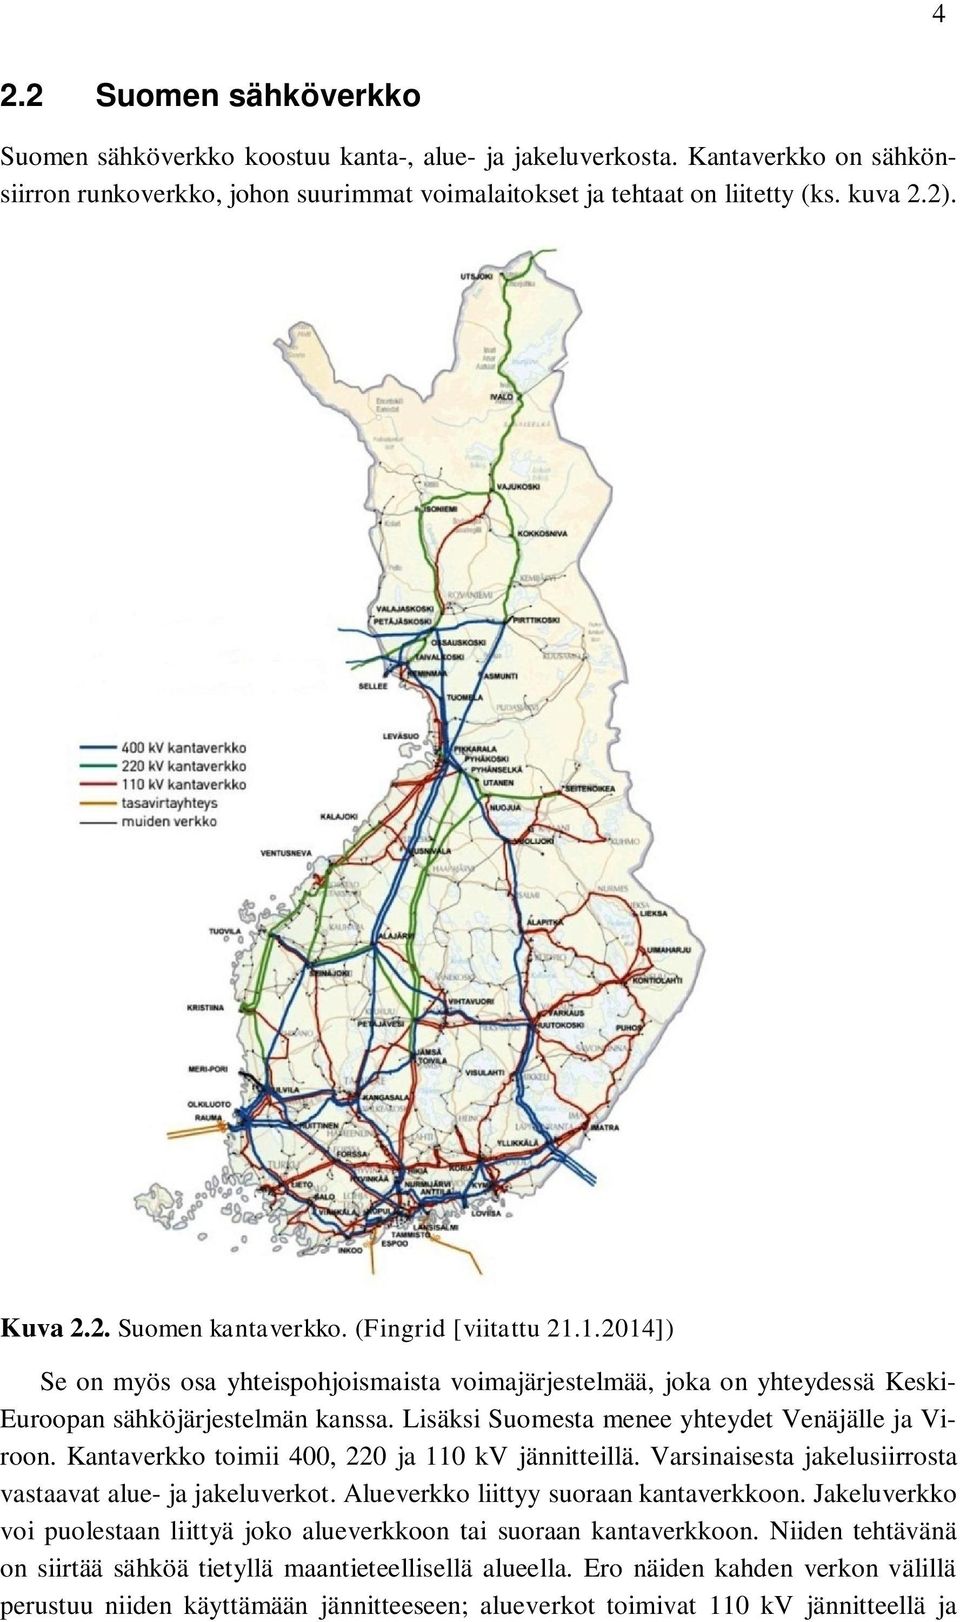 Lisäksi Suomesta menee yhteydet Venäjälle ja Viroon. Kantaverkko toimii 400, 220 ja 110 kv jännitteillä. Varsinaisesta jakelusiirrosta vastaavat alue- ja jakeluverkot.